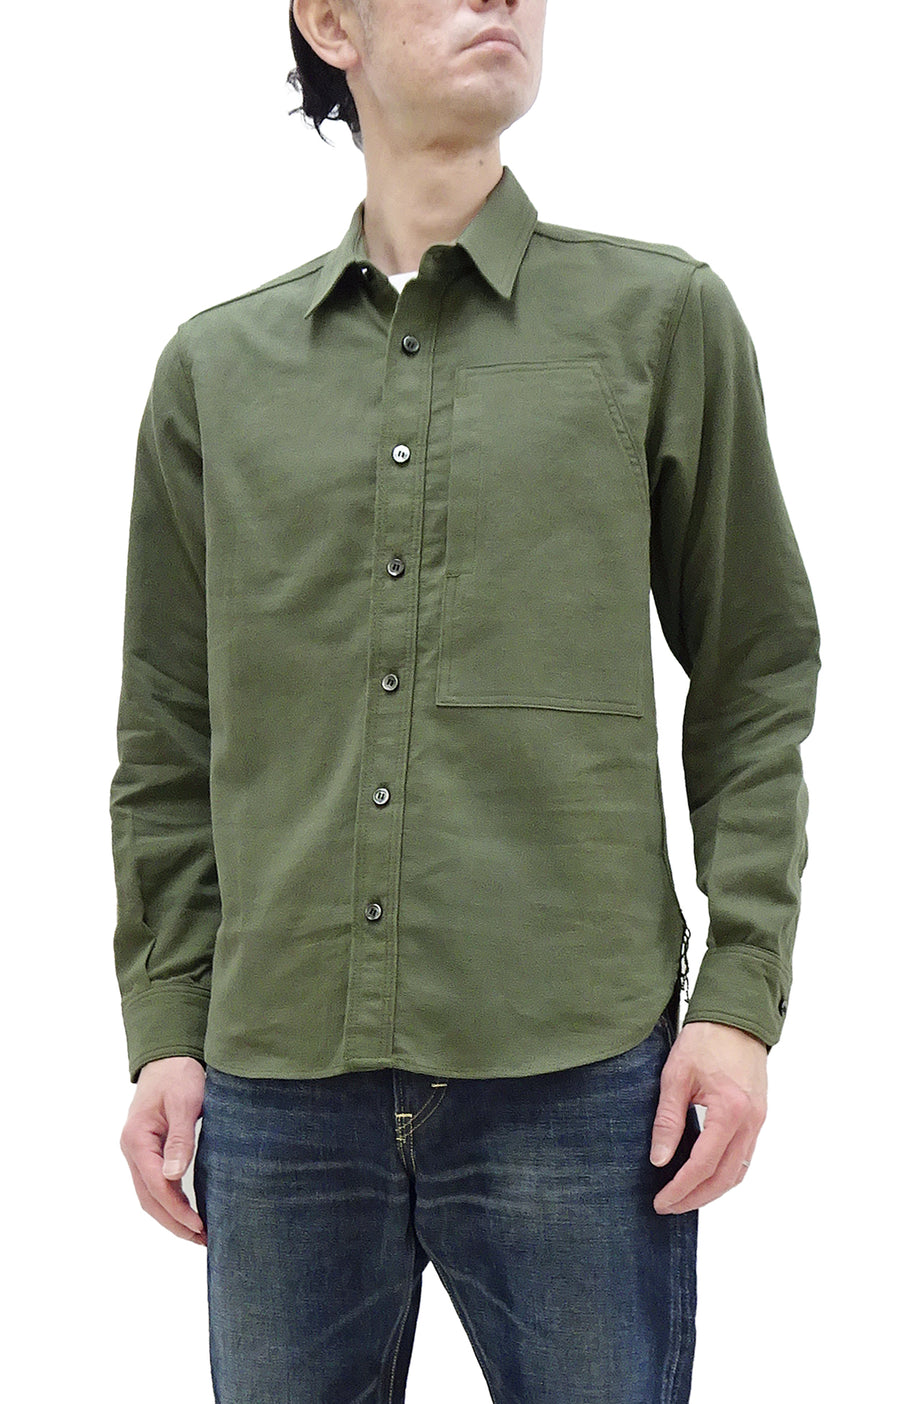 Momotaro Jeans Shirt Men's Plain Lightweight Cotton Dobby Long Sleeve Button Up Work Shirt MXLS1008 Olive